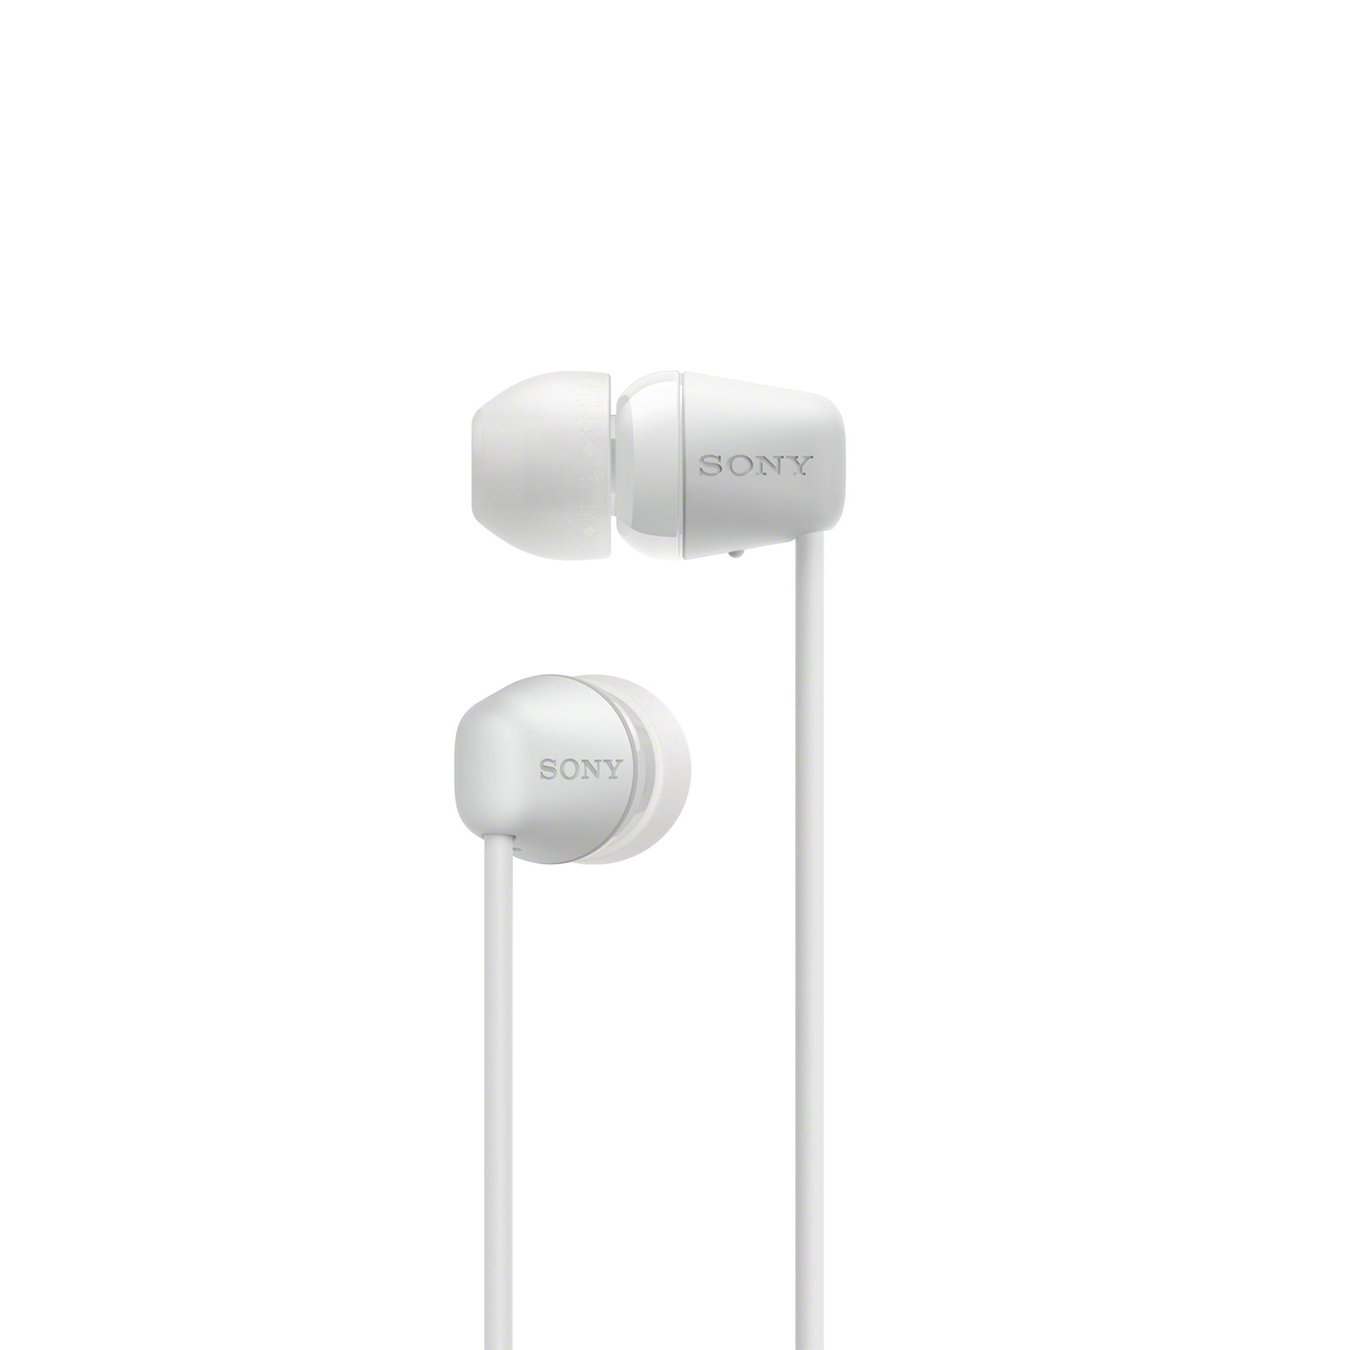 Sony WI-C200 In-Ear Wireless Headphones Review